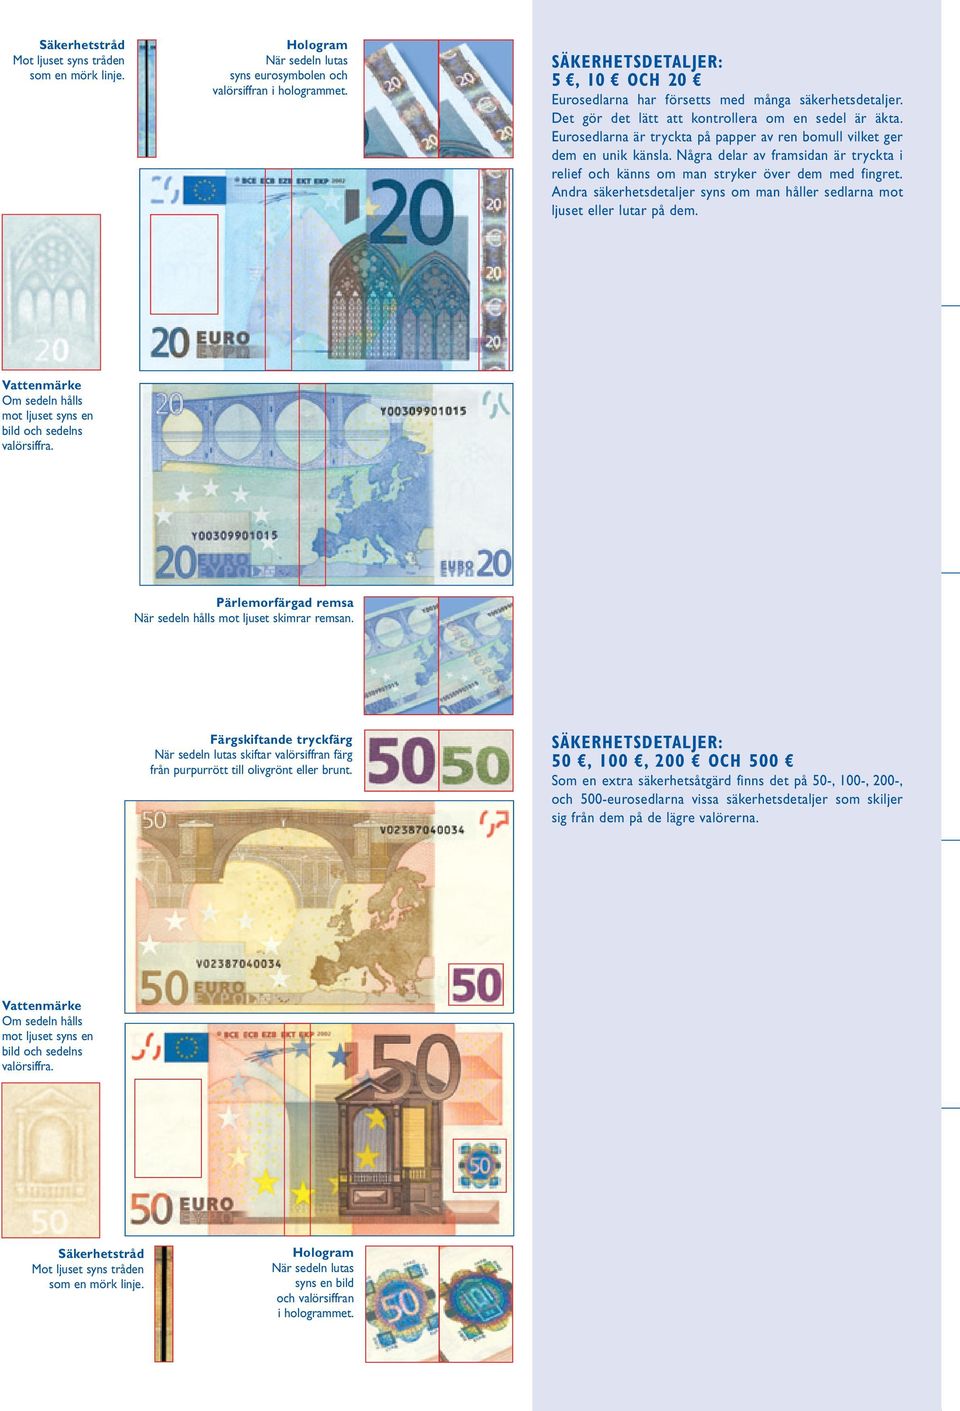 Eurosedlarna är tryckta på papper av ren bomull vilket ger dem en unik känsla. Några delar av framsidan är tryckta i relief och känns om man stryker över dem med fingret.